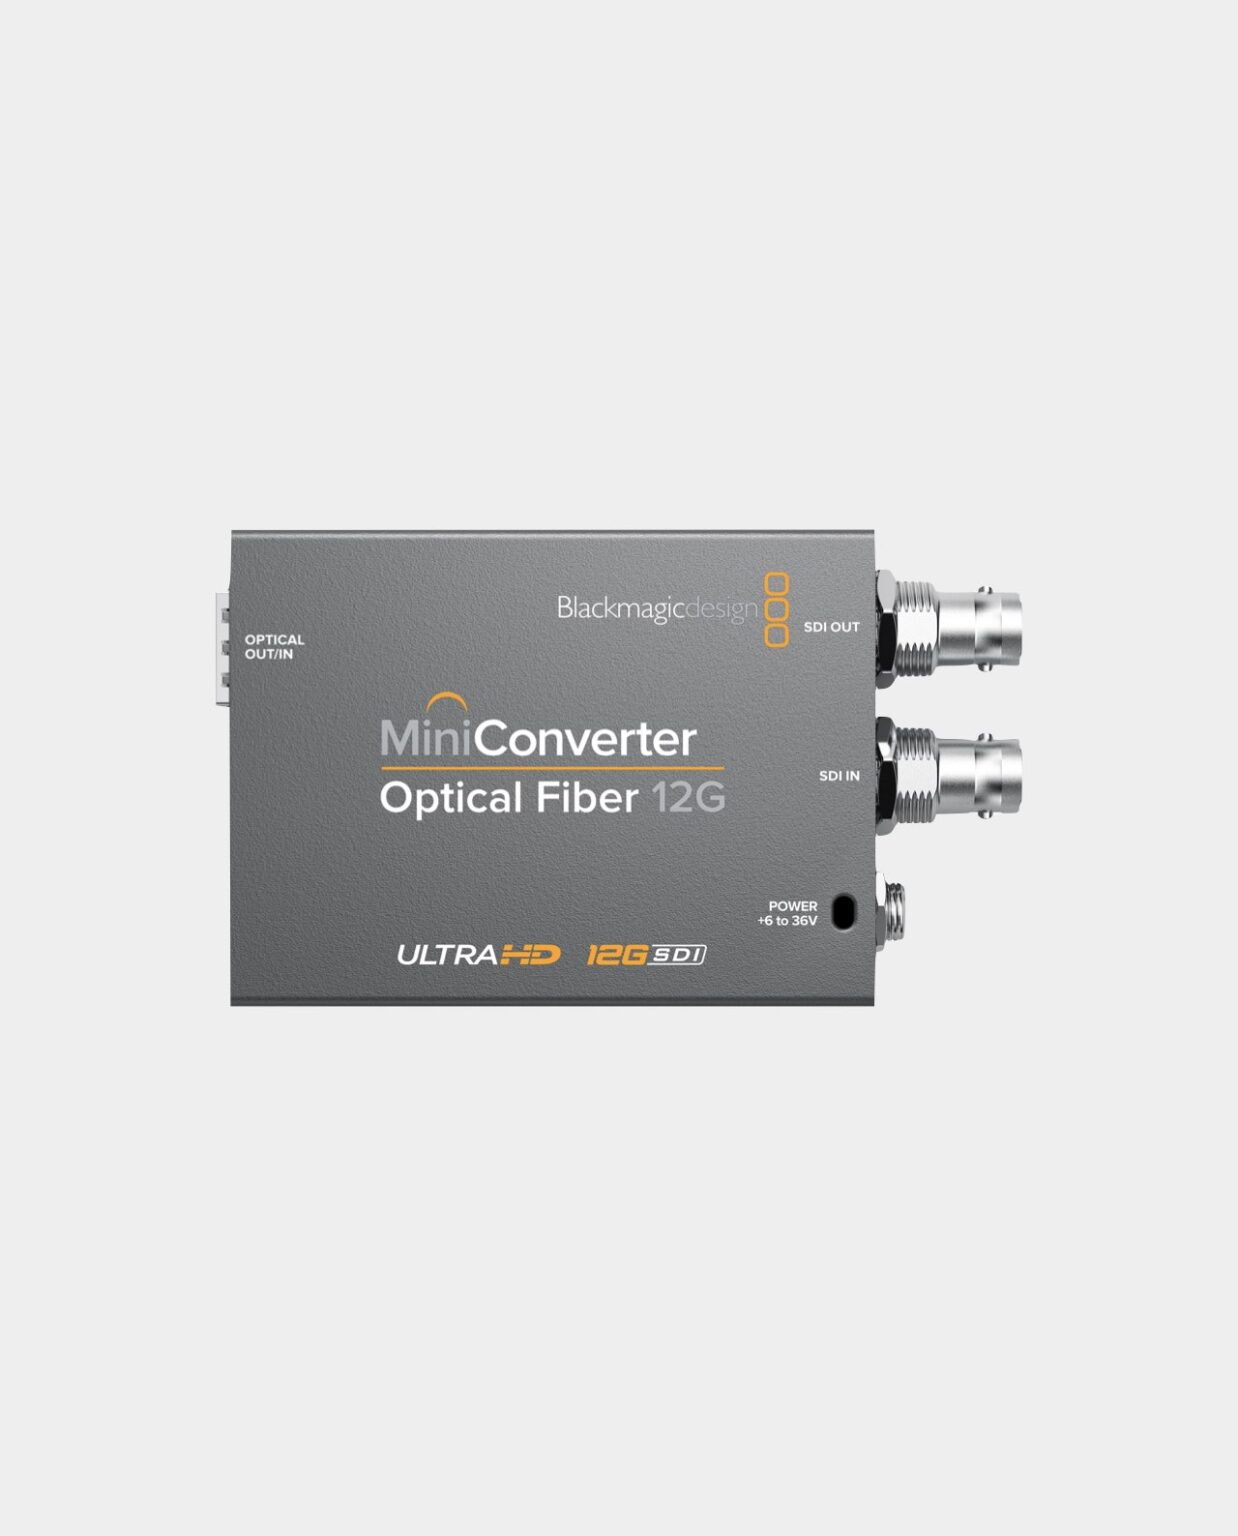 Конвертация 12. Blackmagic Optical Fiber 12g. Mini Converter Optical Fiber 12g. Optical Mini Converter 12 g. Mini Converter - Optical Fiber 12g конвертер Blackmagic.